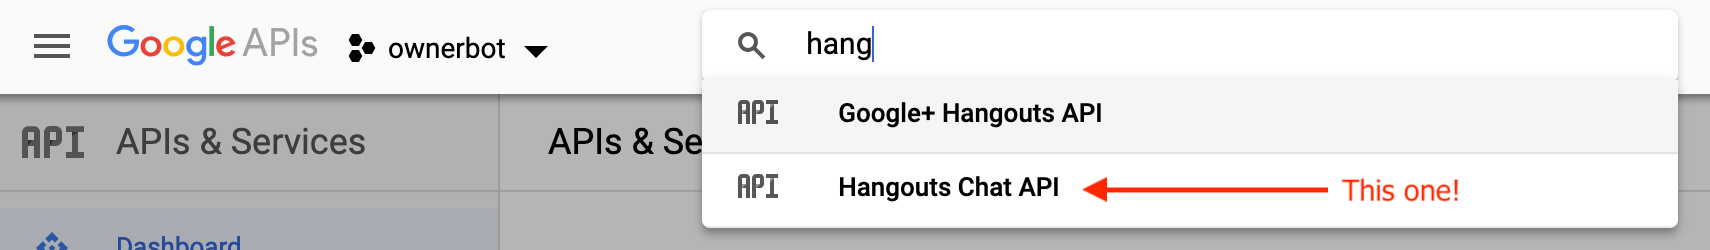 api-console-hangouts-chat-api-1